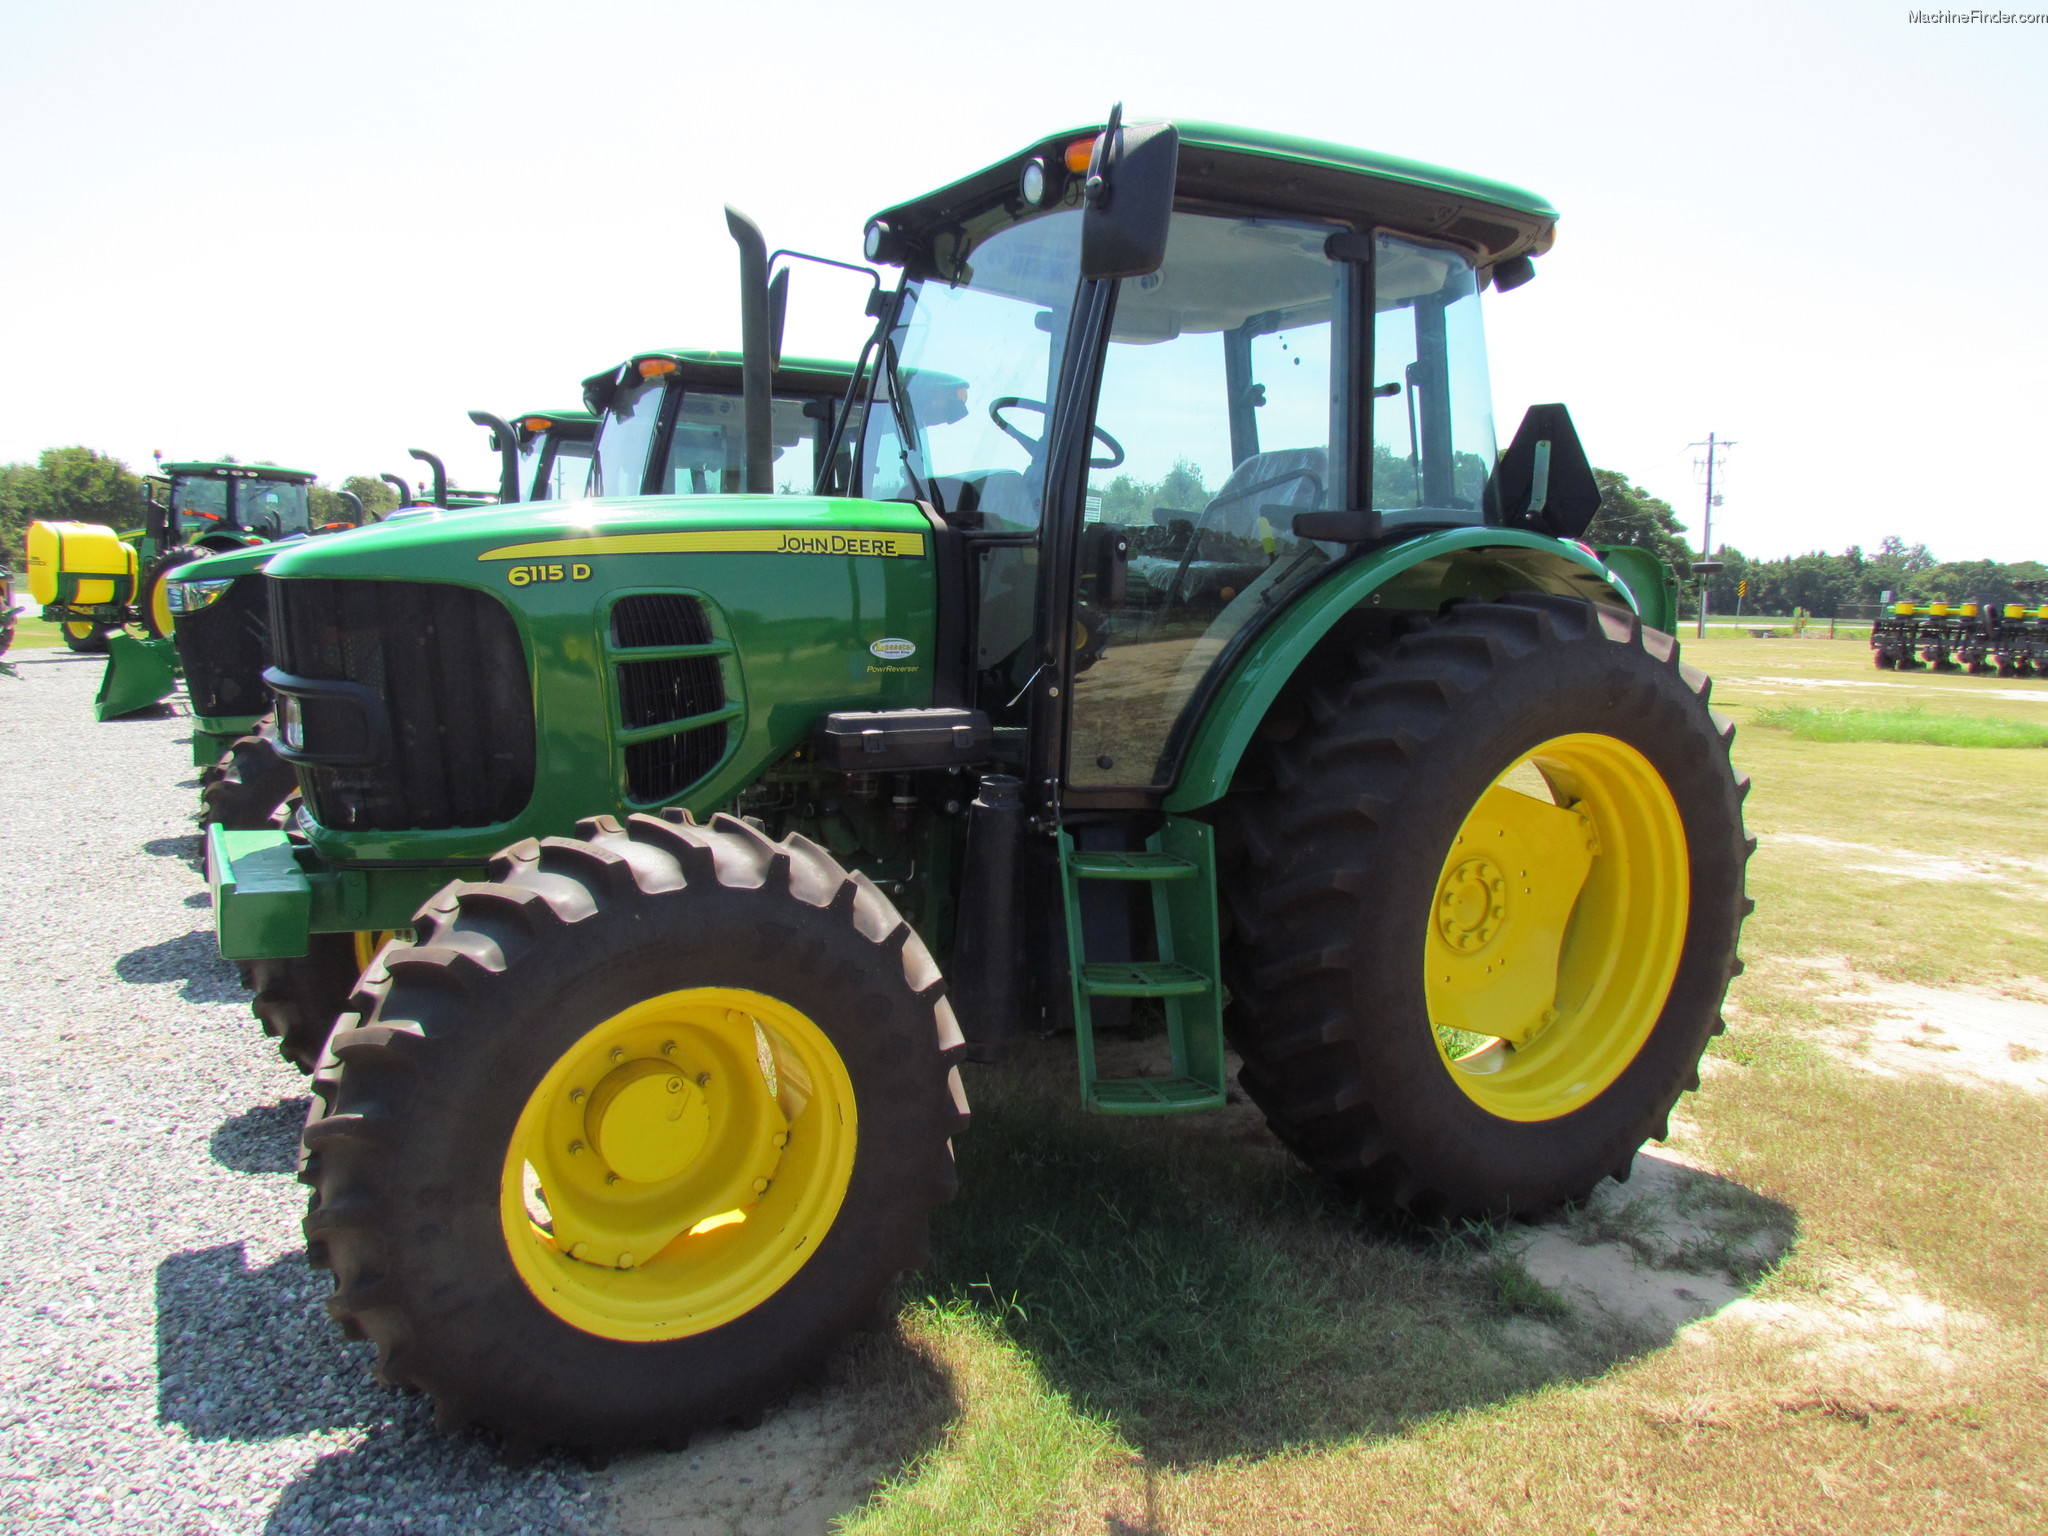 2012-john-deere-6115d-tractors-utility-40-100hp-john-deere